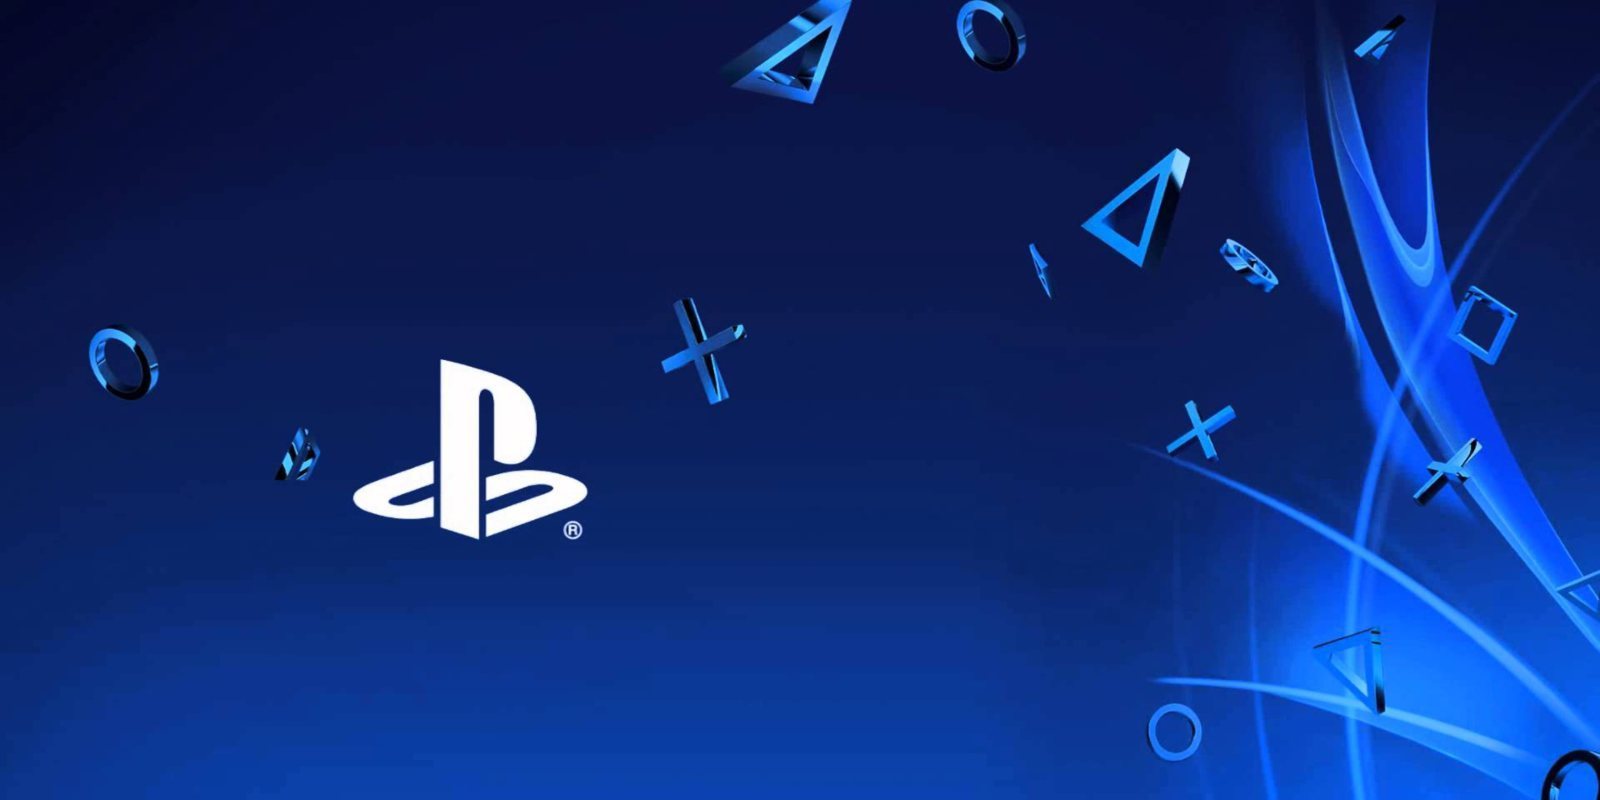 Sony asegura haber solucionado el problema con los mensajes que inutilizaban PS4